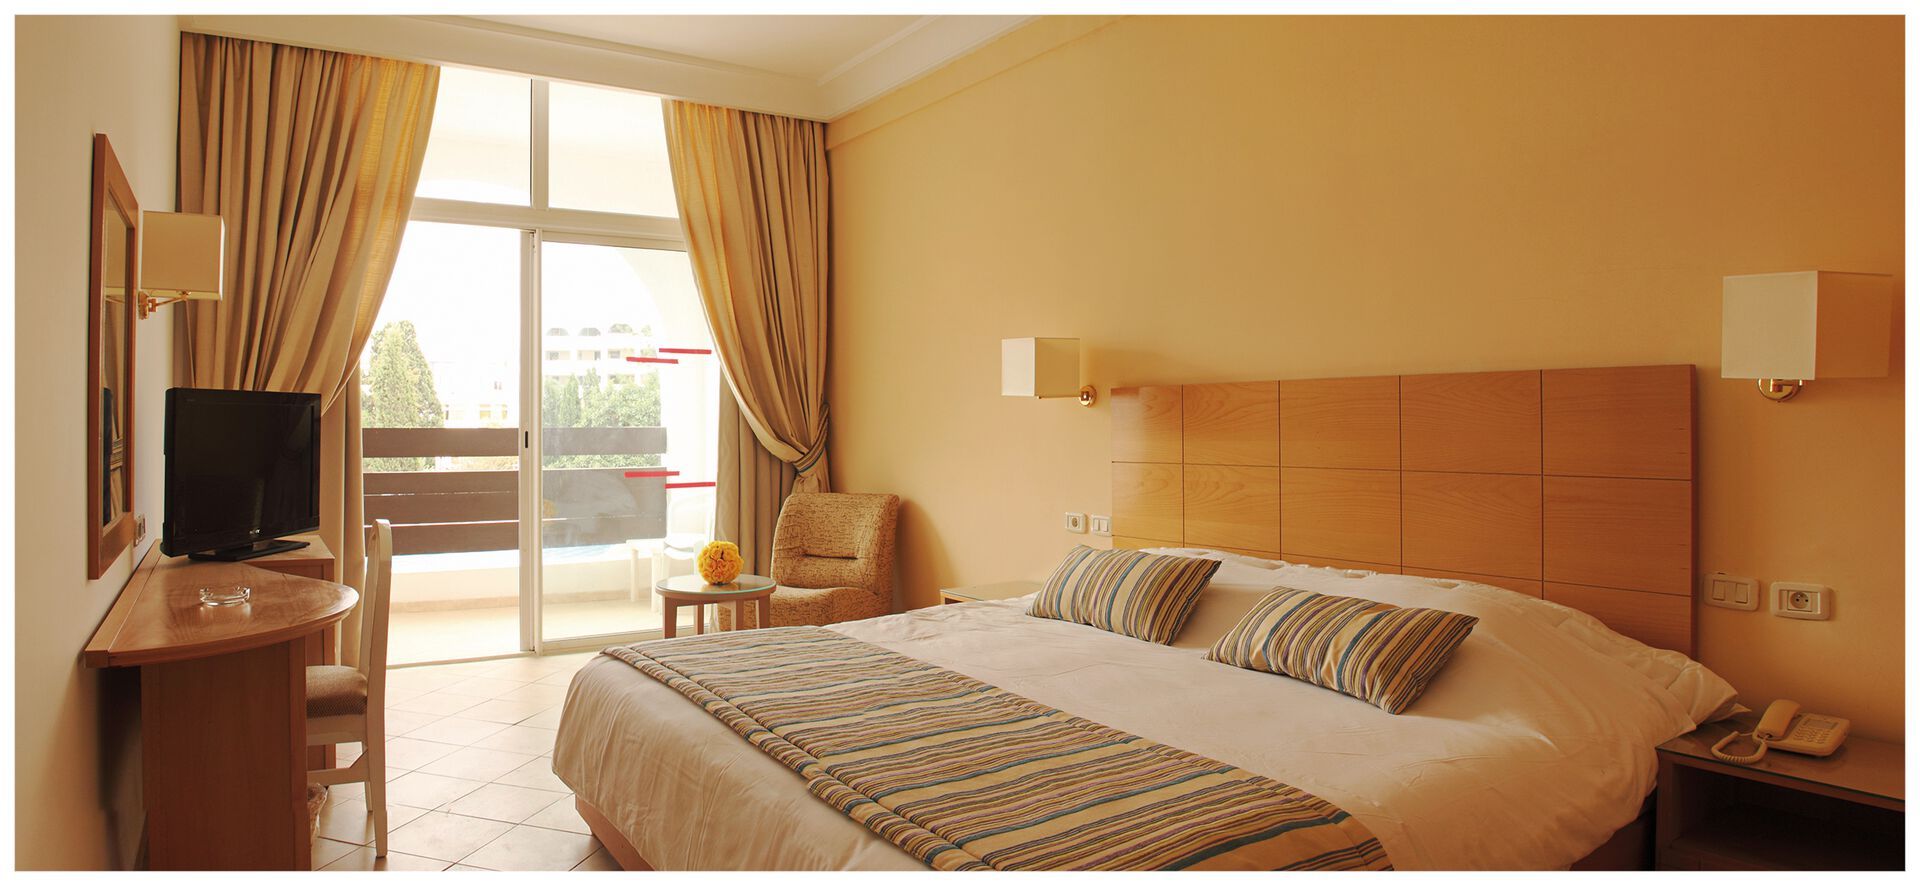 Tunisie - Sousse - Hôtel Marhaba Salem Resort 4*